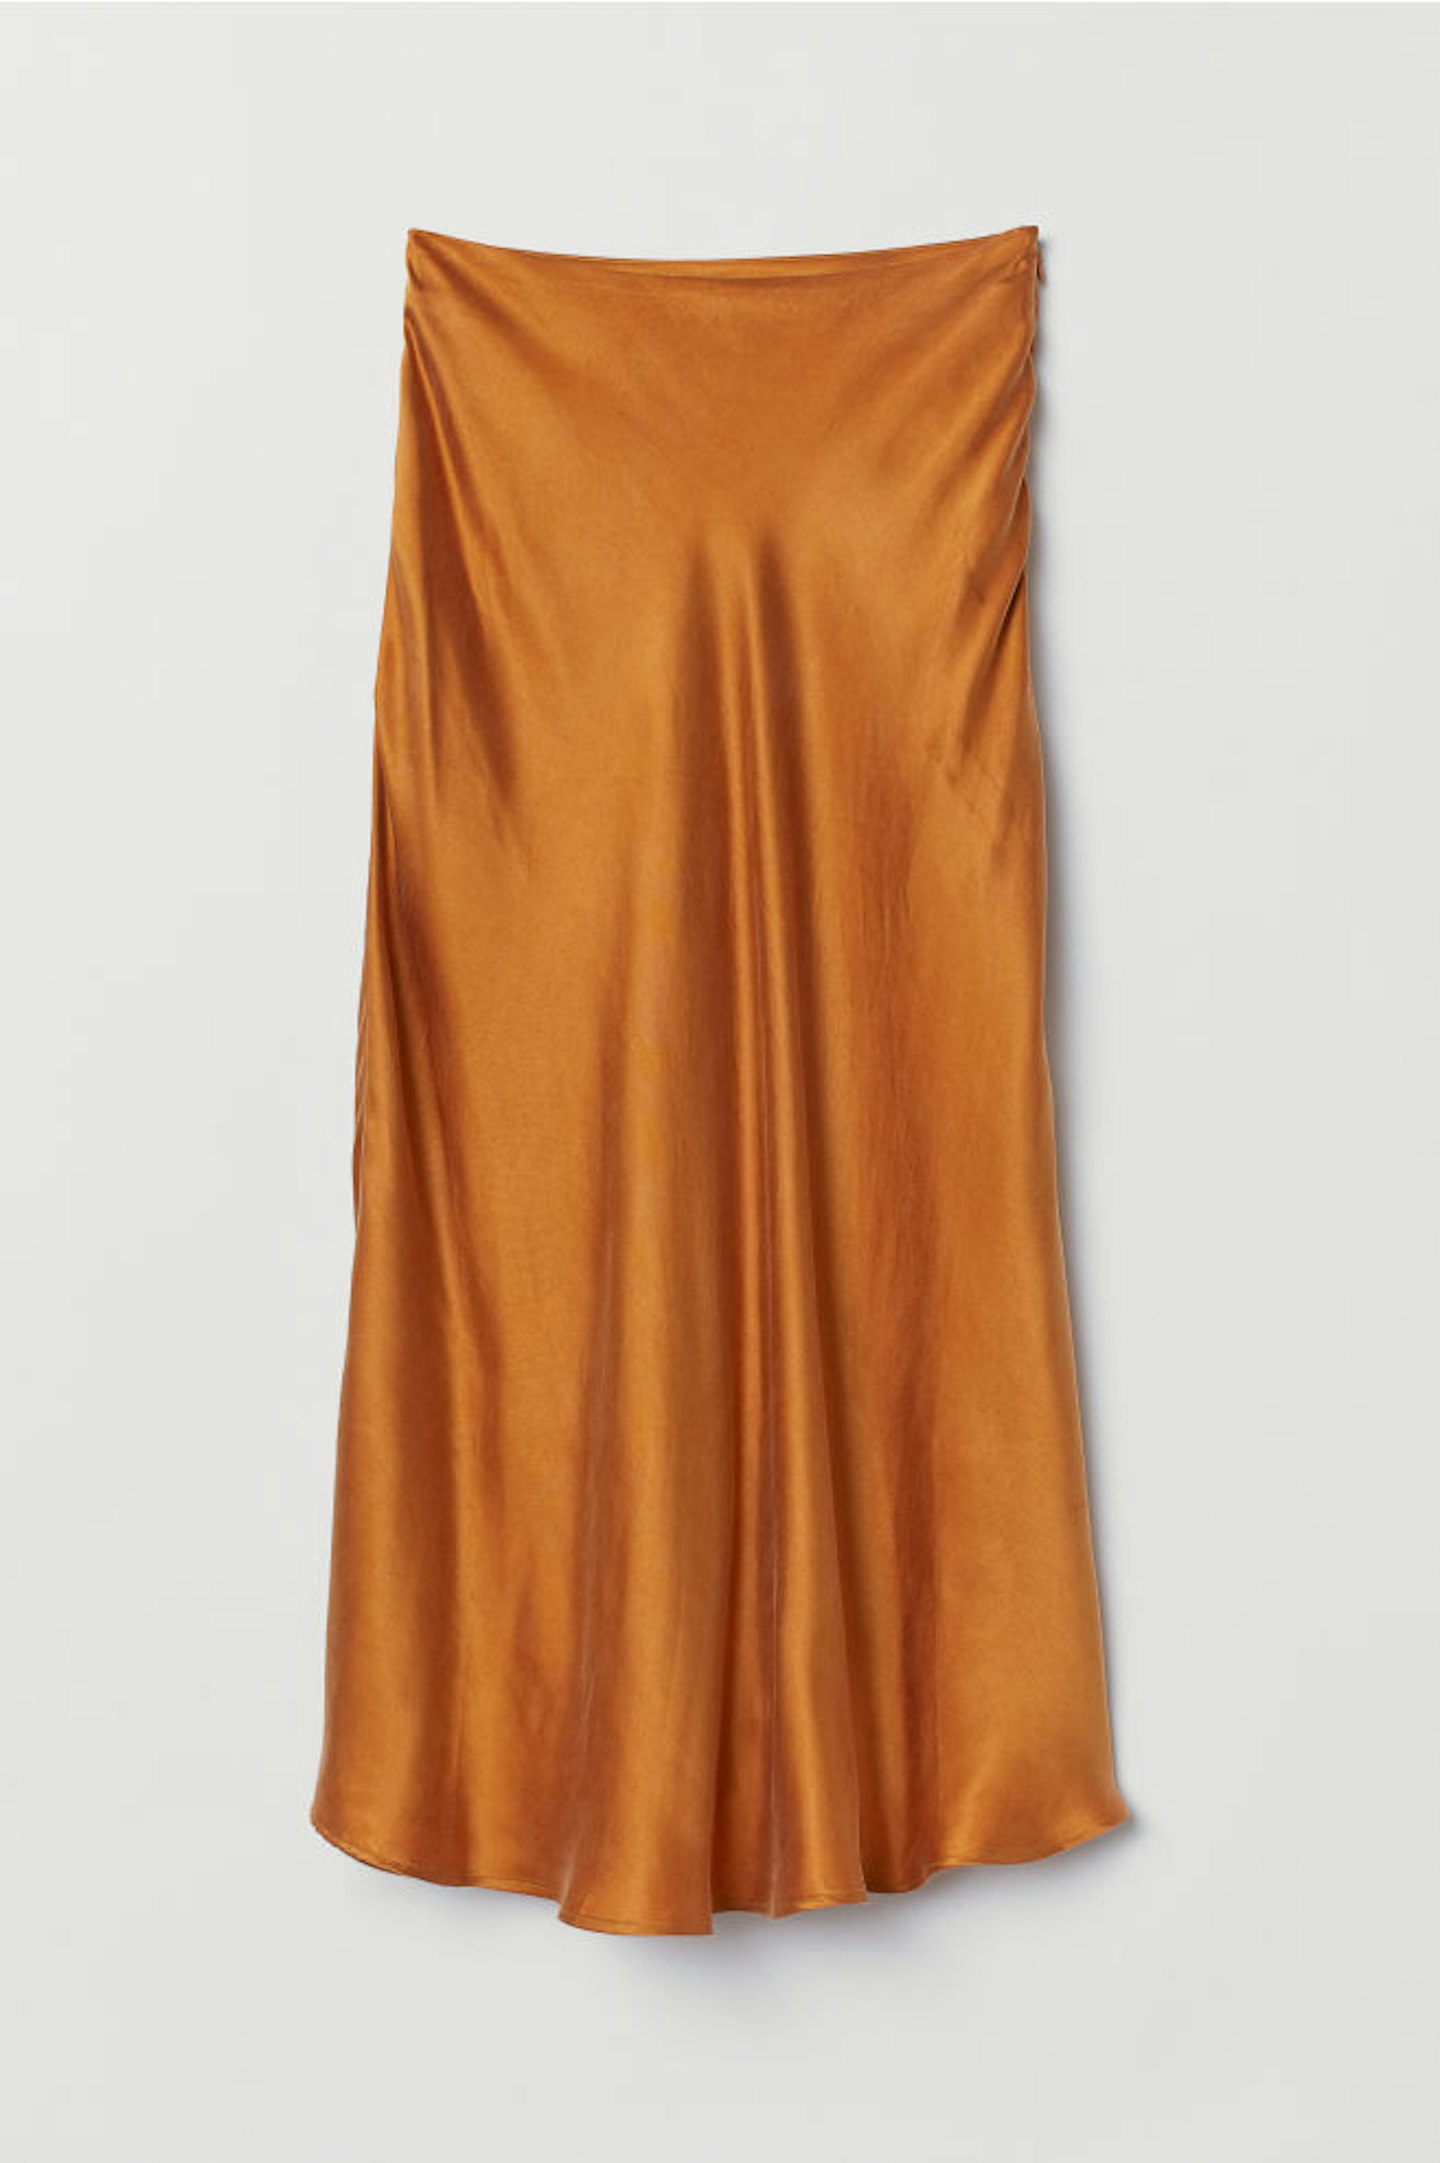 H&M, Calf-Length Skirt, £34.99